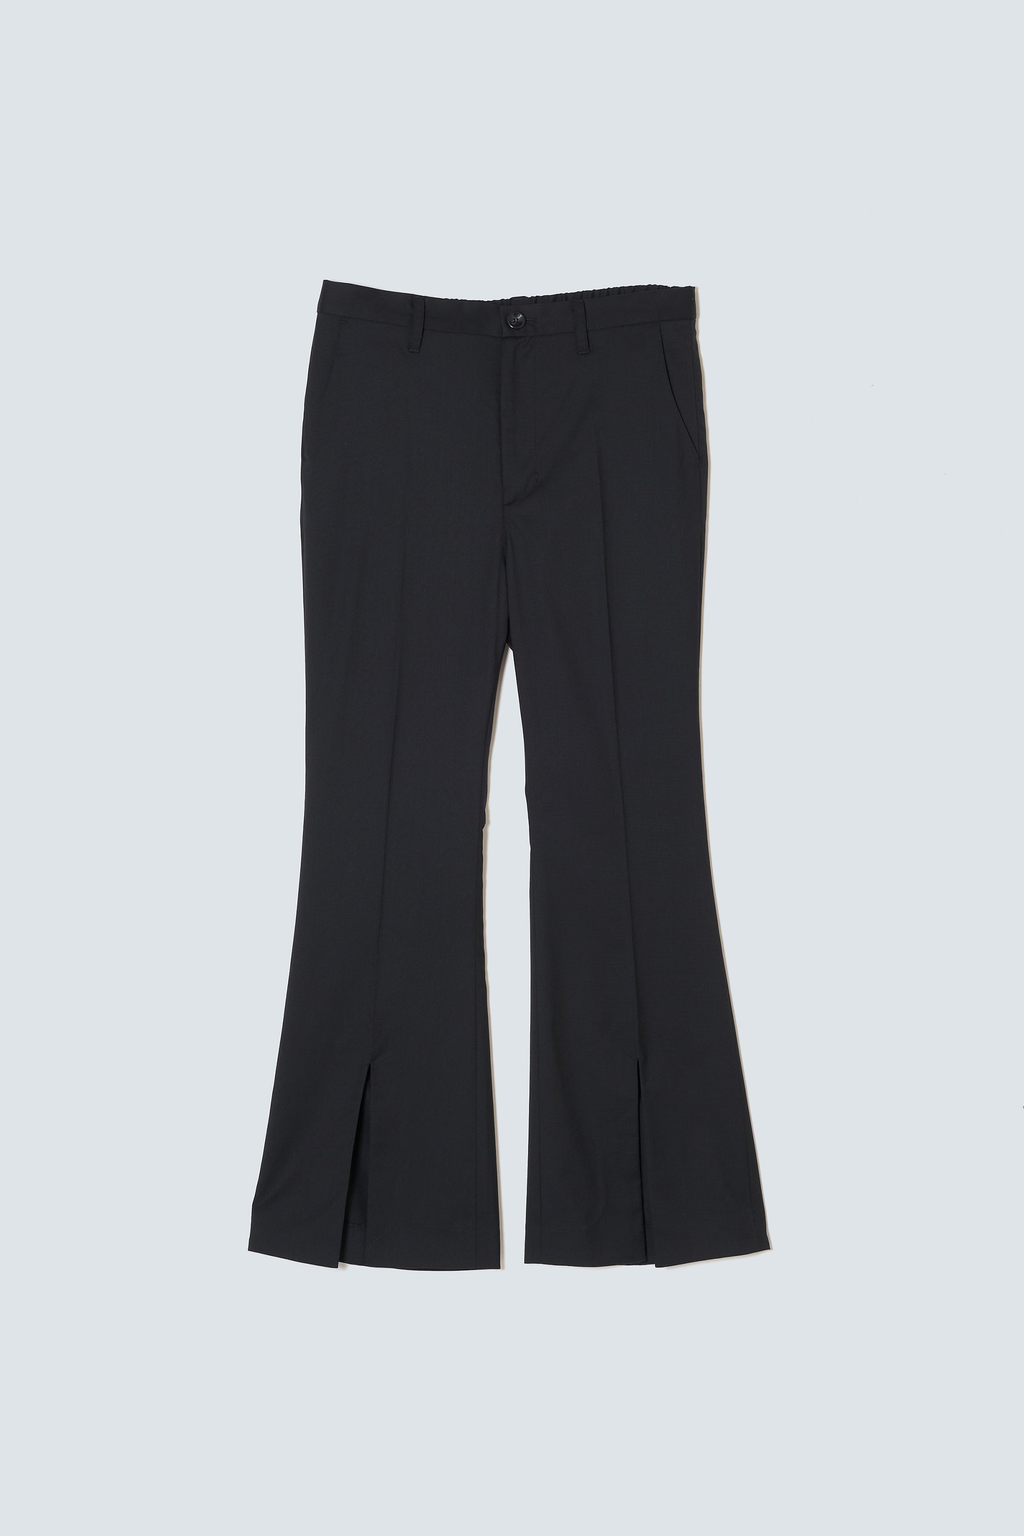 Flare Slit Pants / Black Wool